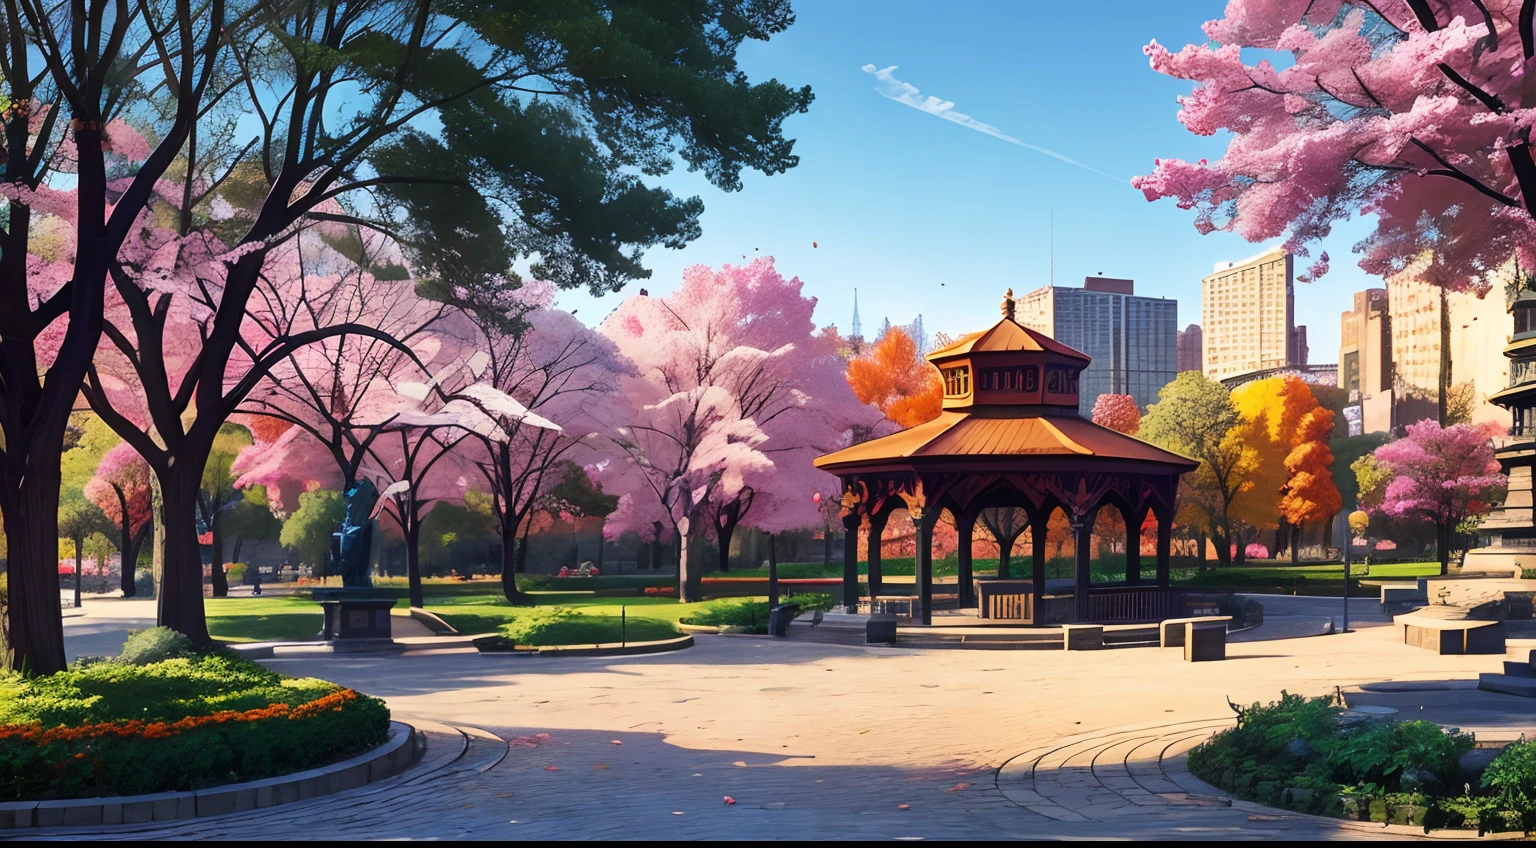 (Лучшее качество:1.0), a vibrant park in the middle of a яркий cityscape, деревья, скамейки, 1 статуя, 1 беседка, Брусчатые дорожки, стиль комиксов, яркий